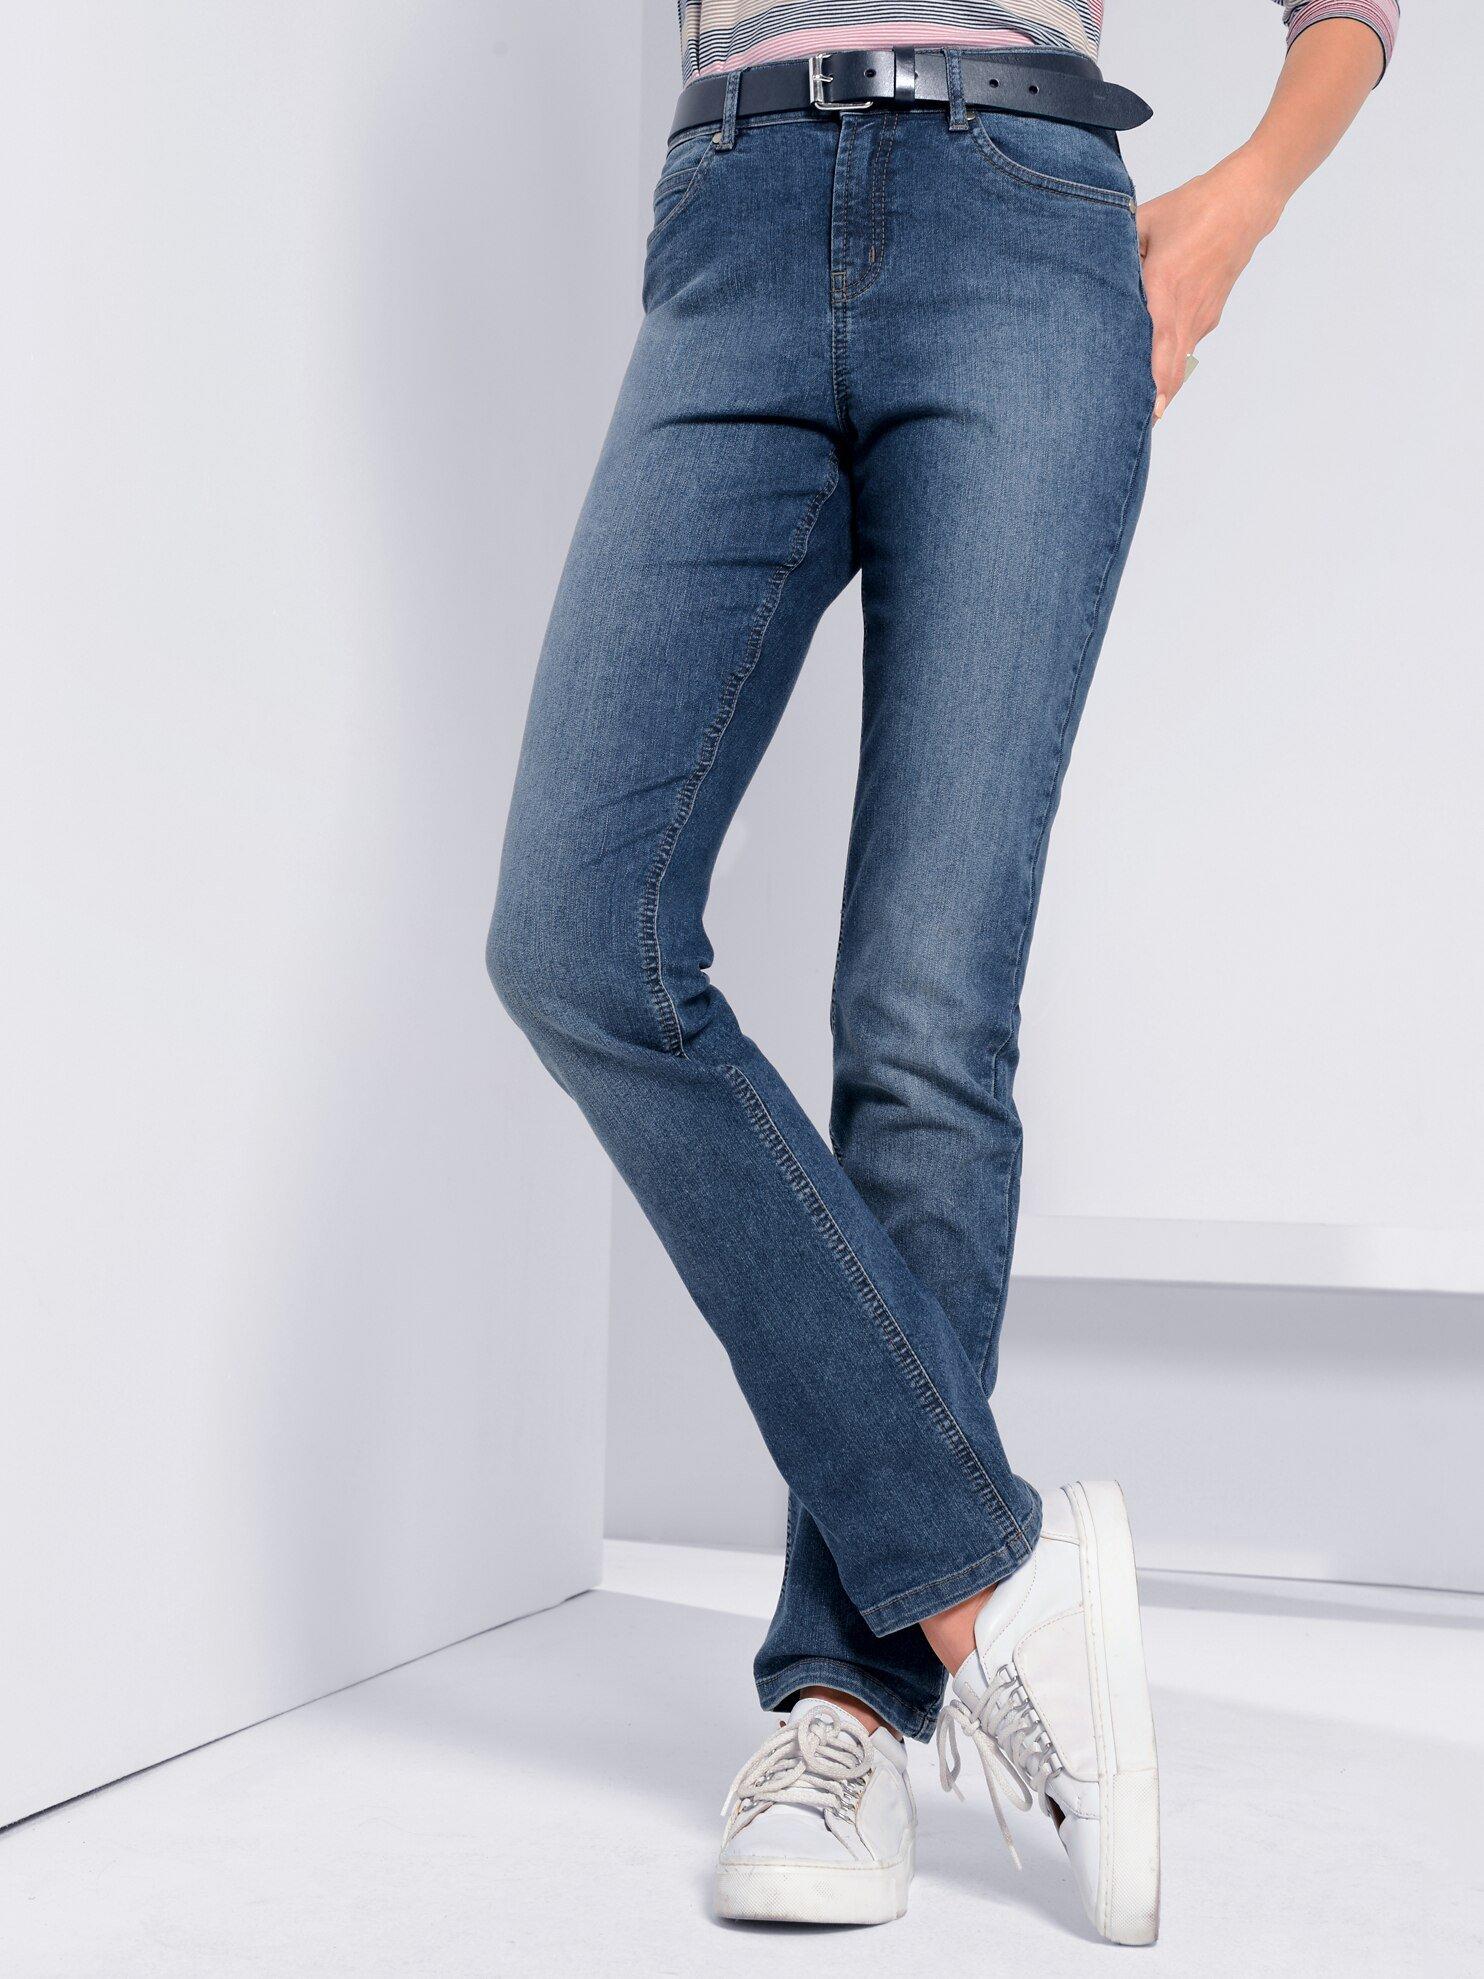 Fadenmeister Berlin - Jeans